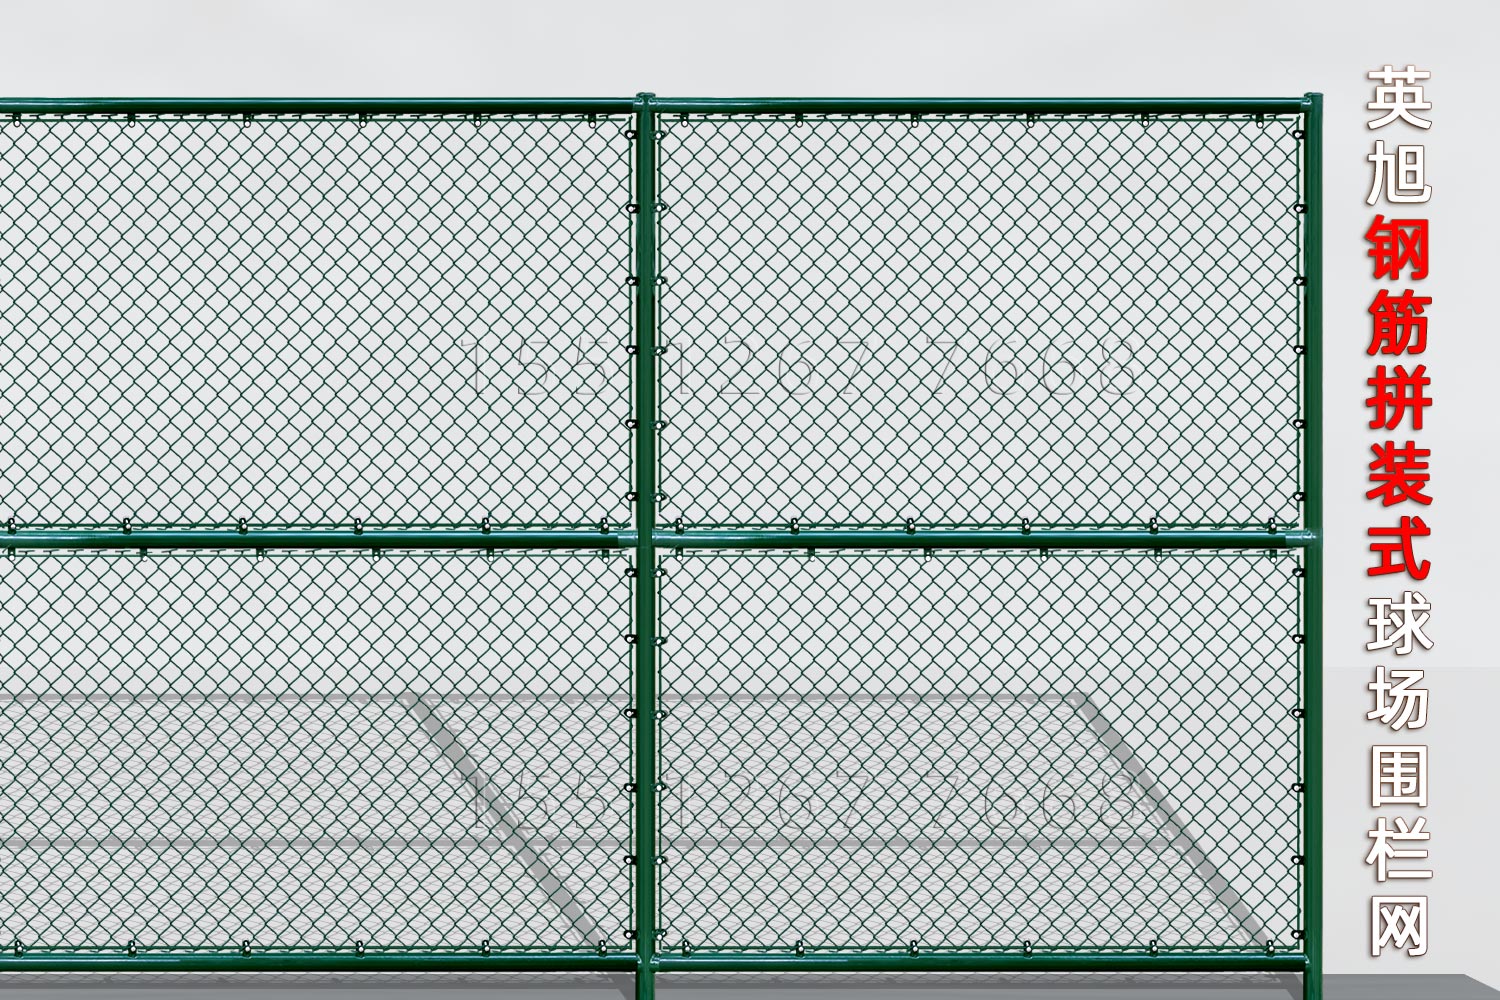 广西钢筋组装式球场围栏网